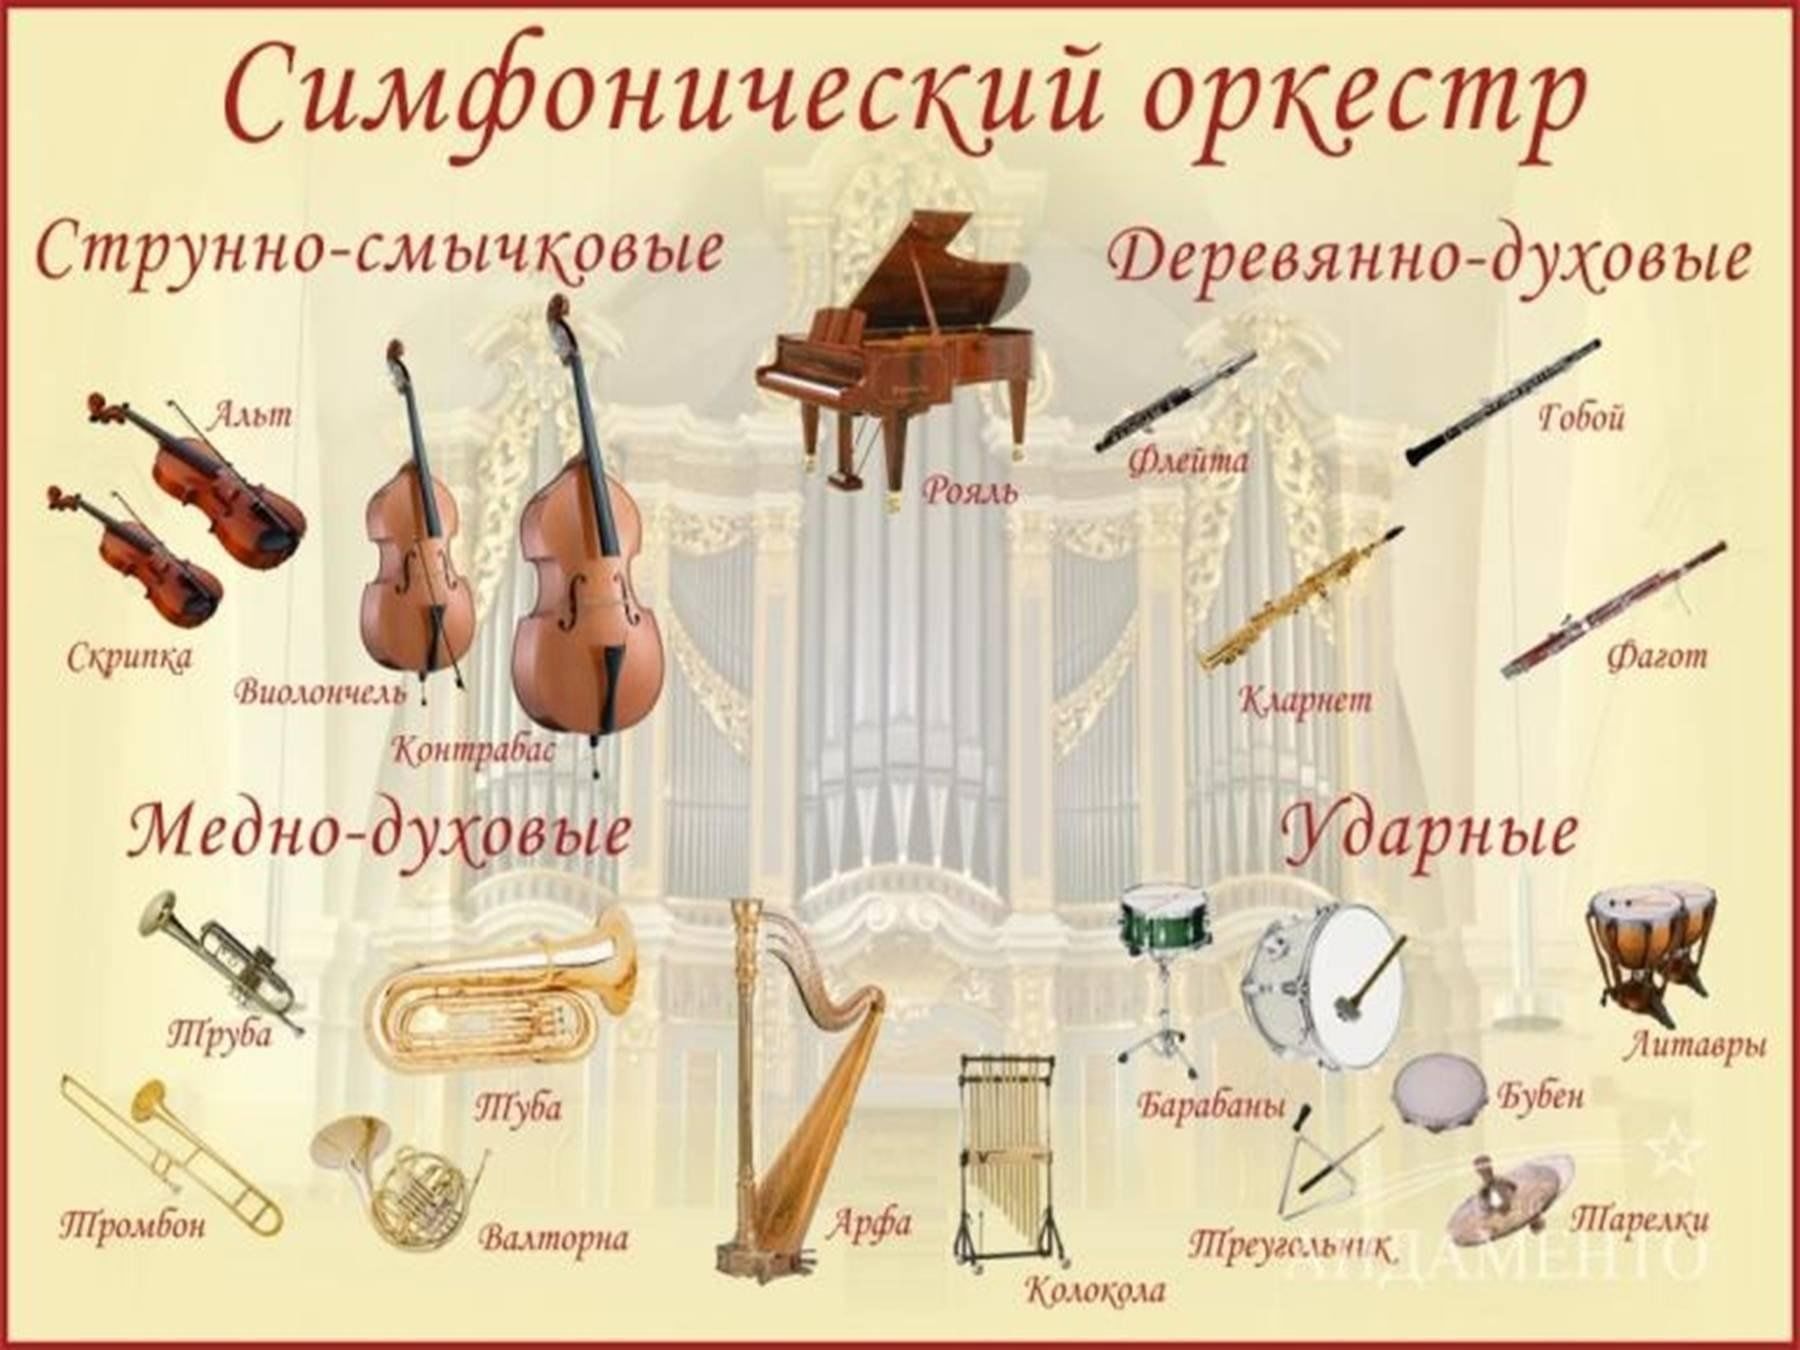 Учить музыкальные инструменты. Инструменты входящие в состав симфонического оркестра. Инструмент который входит в состав симфонического оркестра. Ударные инструменты которые входят в состав симфонического оркестра. Музыкальные инструменты симфонического оркестра по группам.